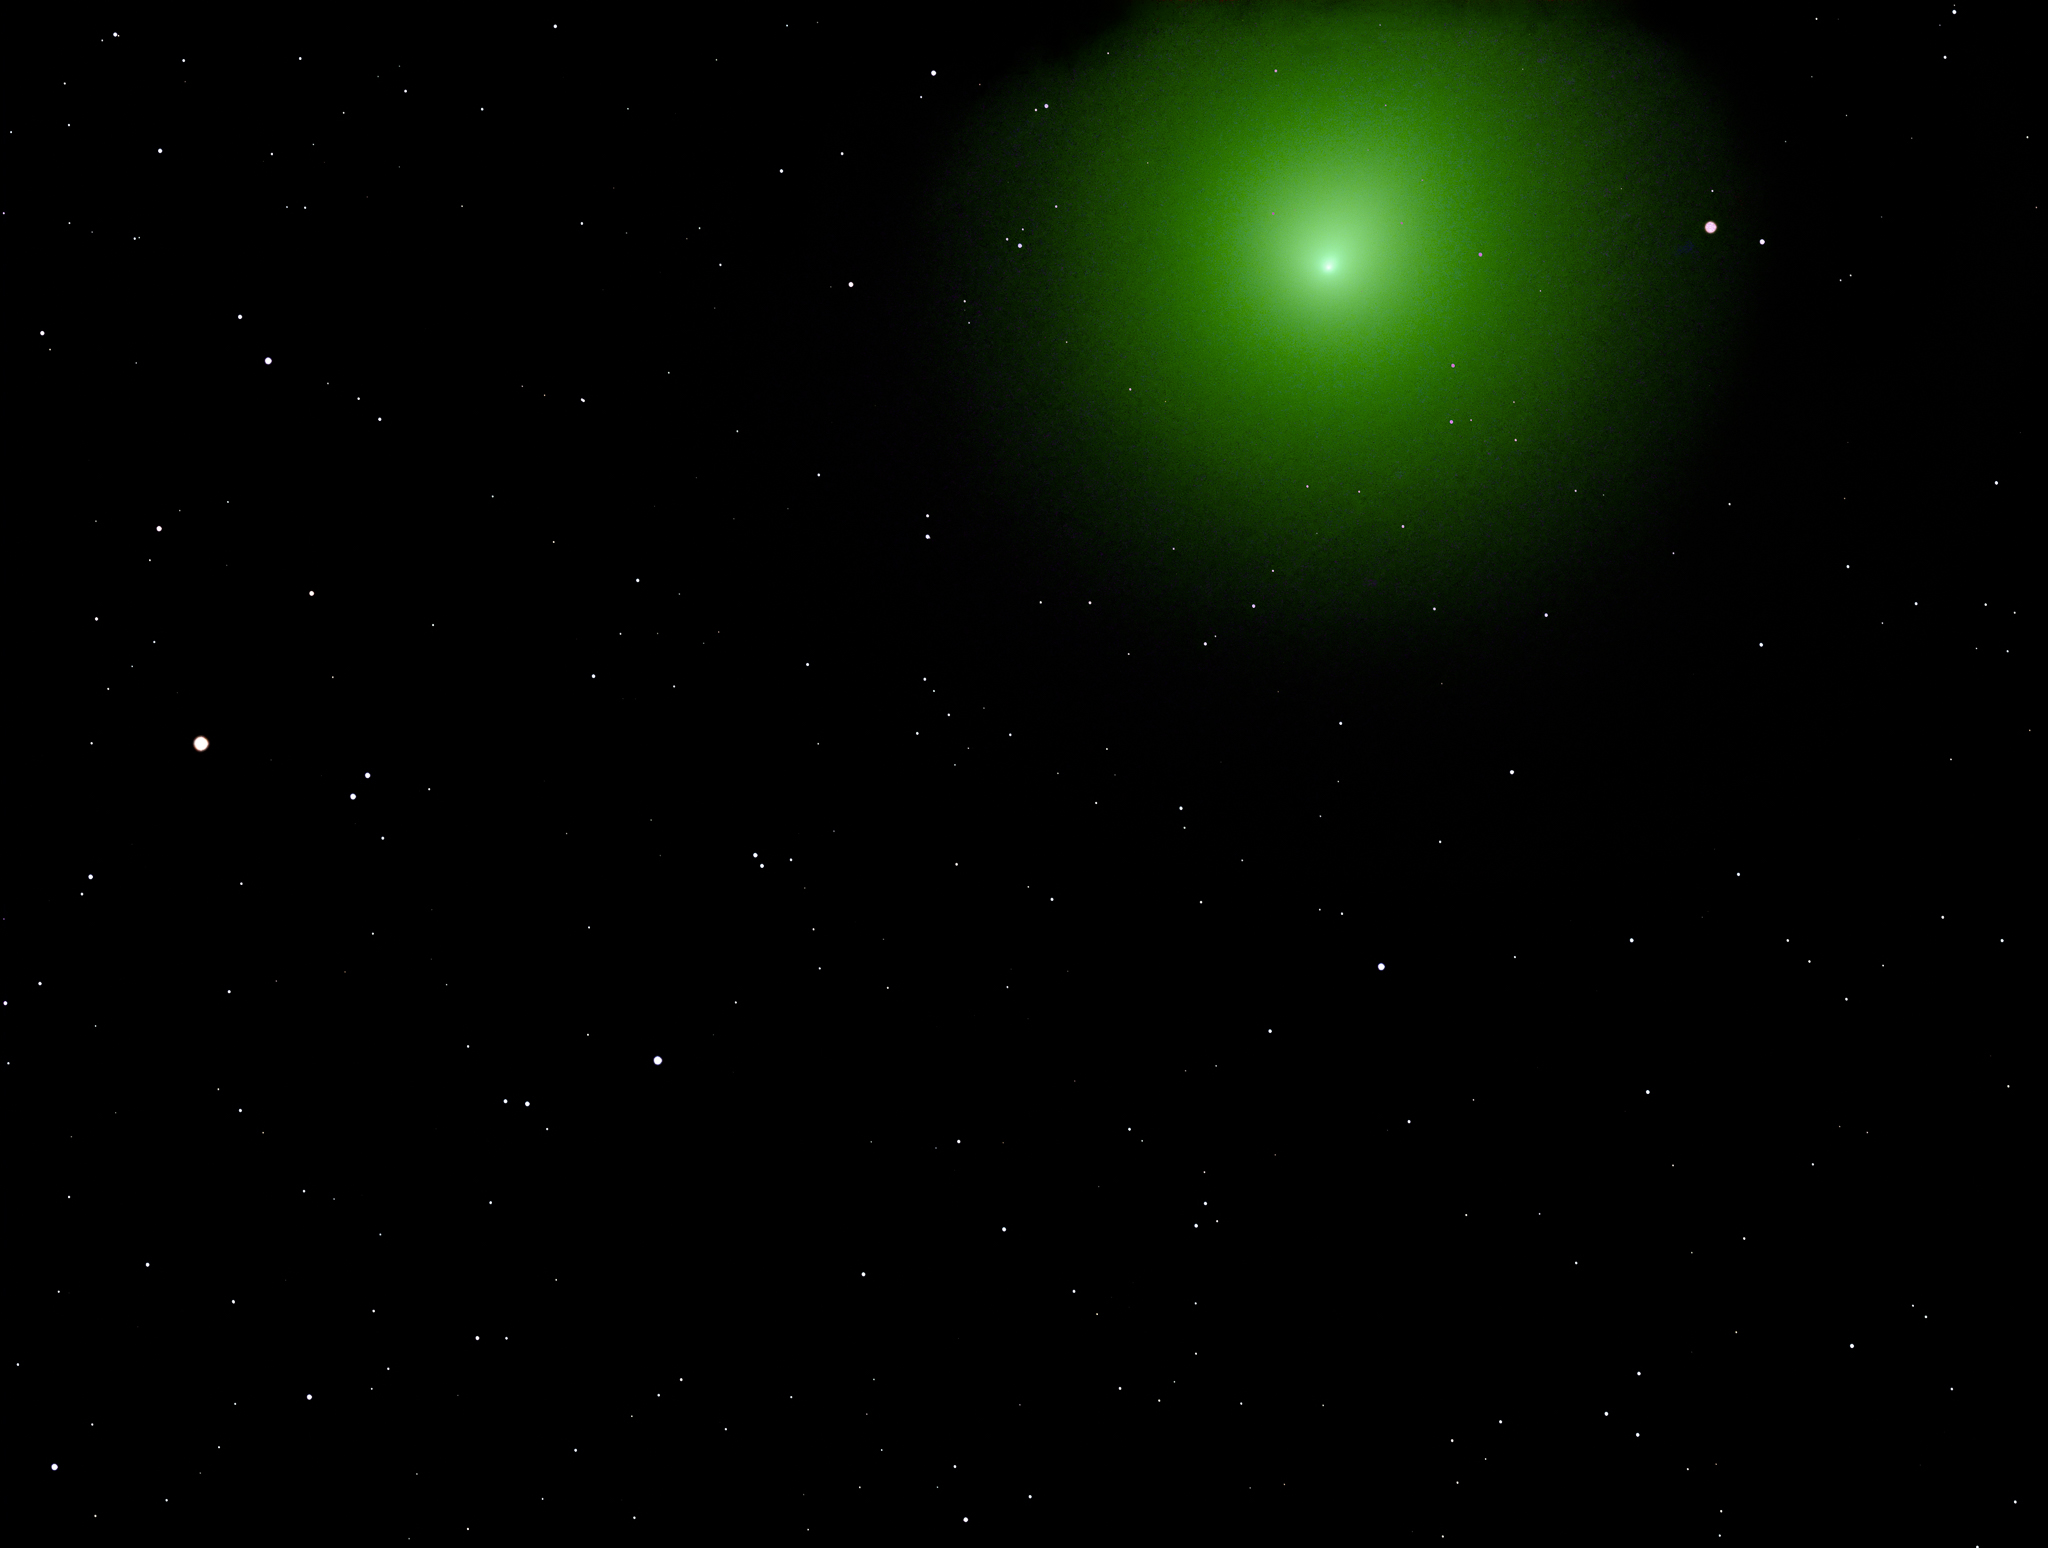 Figure 6 - Comet 46P Wirtanen